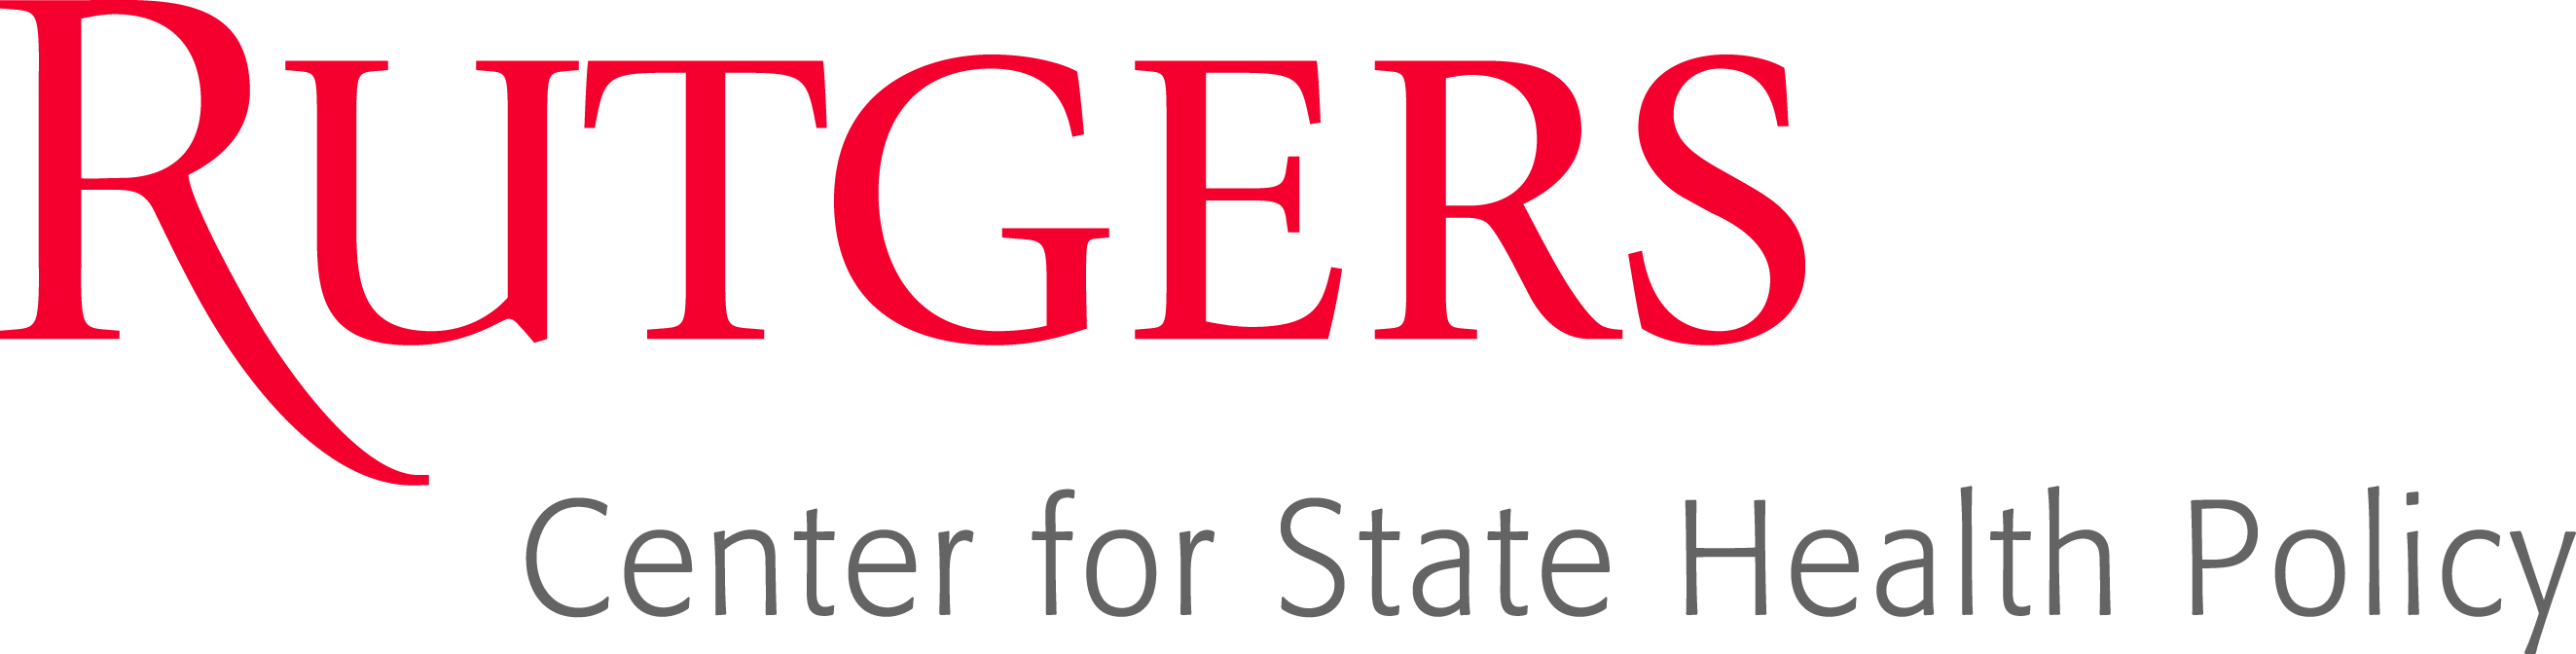 Rutgers_CSHP_logo